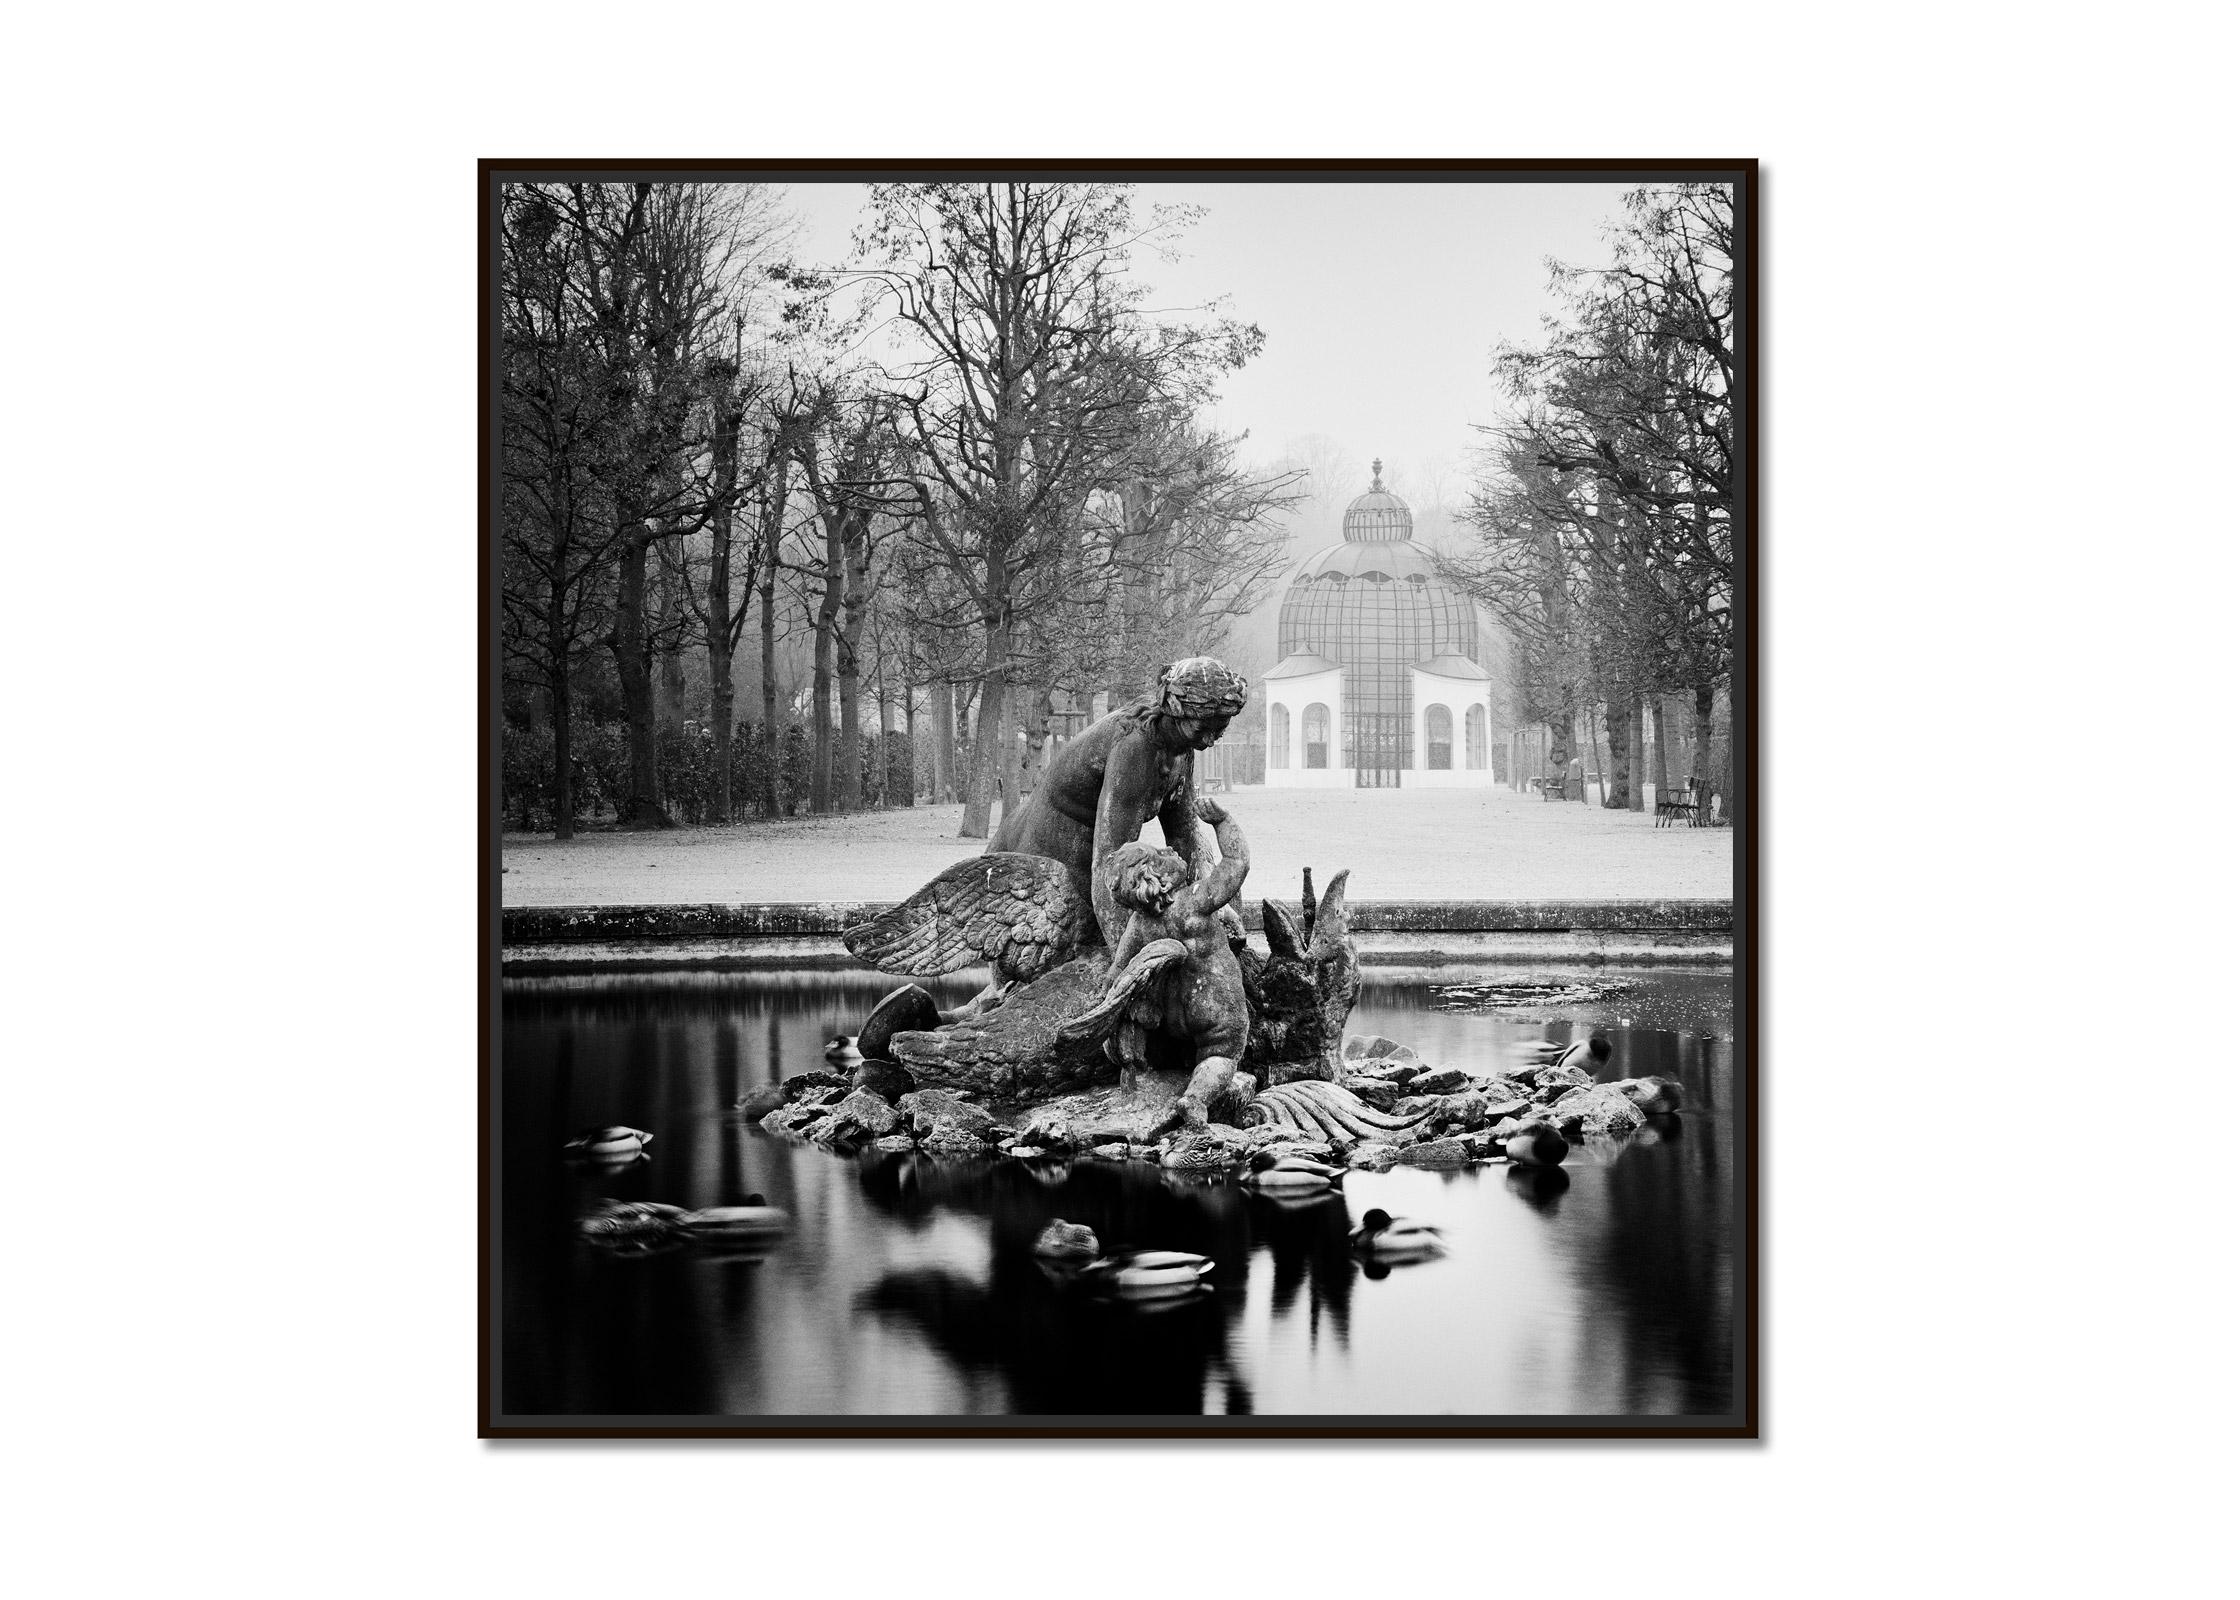 Duck Race Schloss Schoenbrunn Vienna black and white art landscape photography - Photograph by Gerald Berghammer